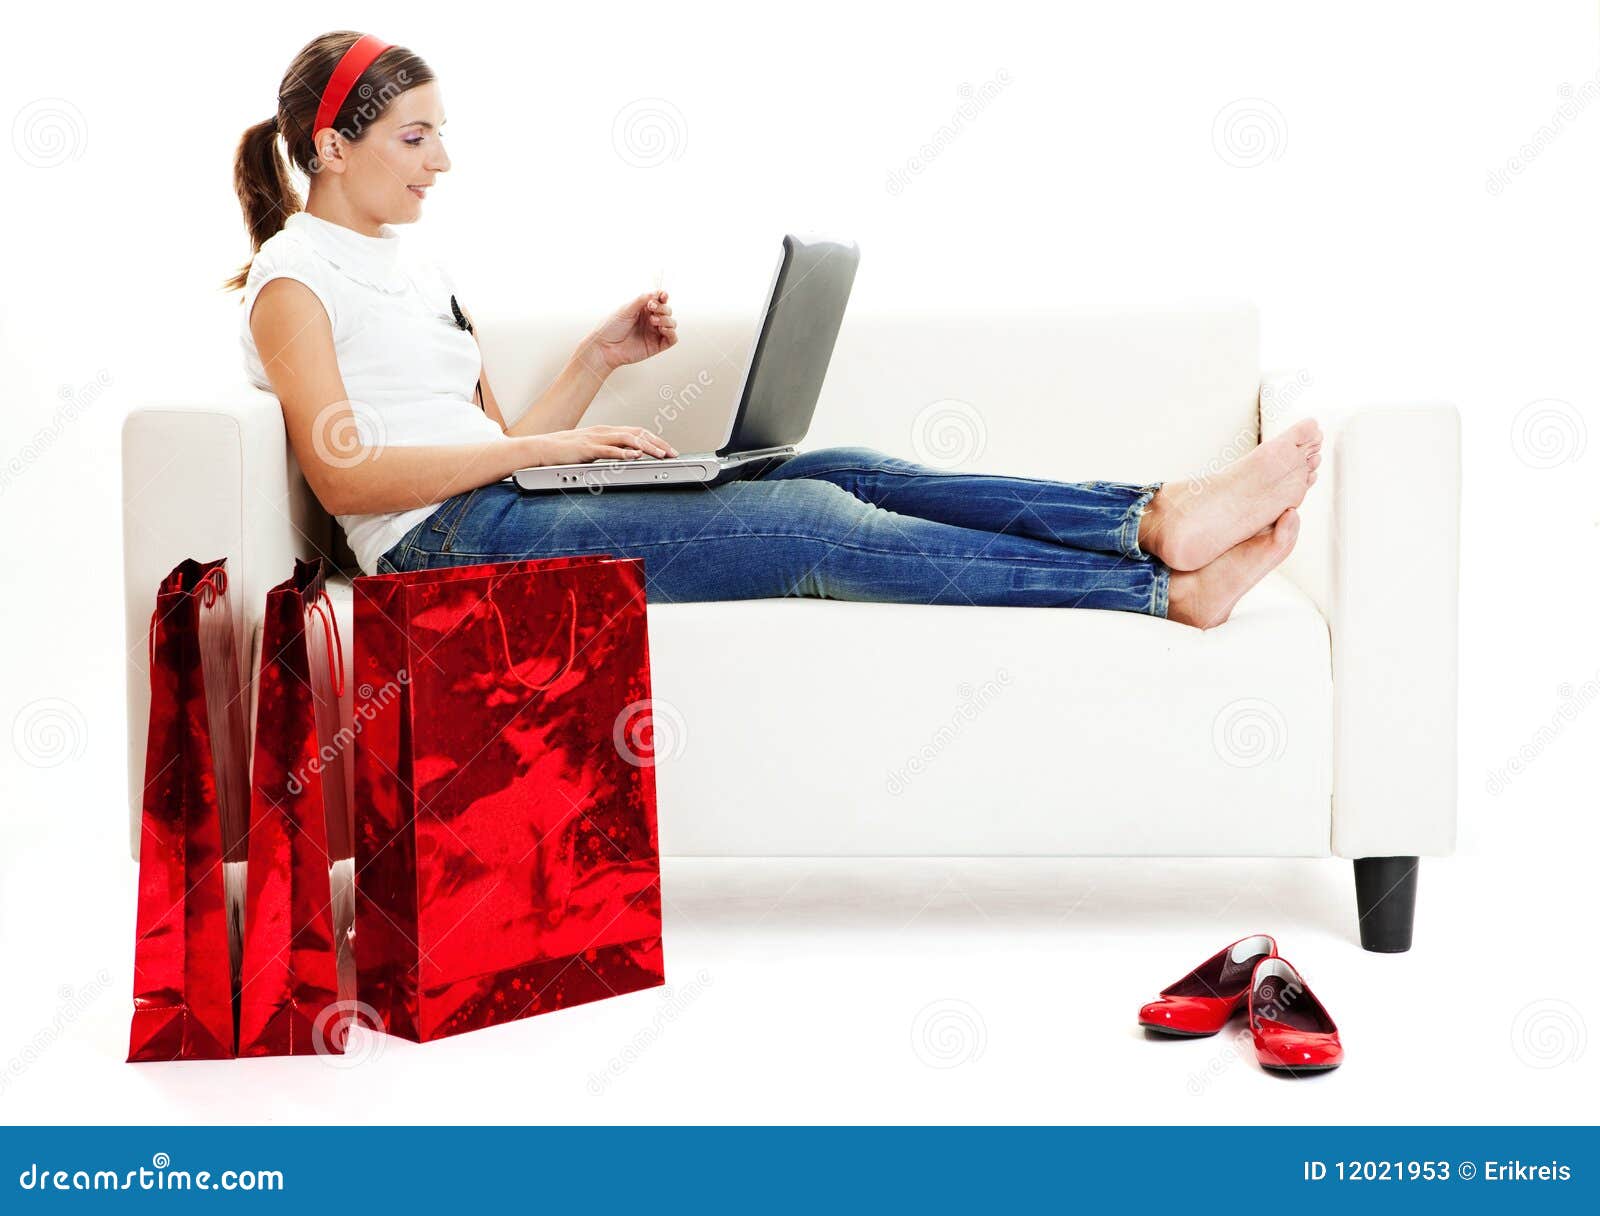 online-shopping-12021953.jpg